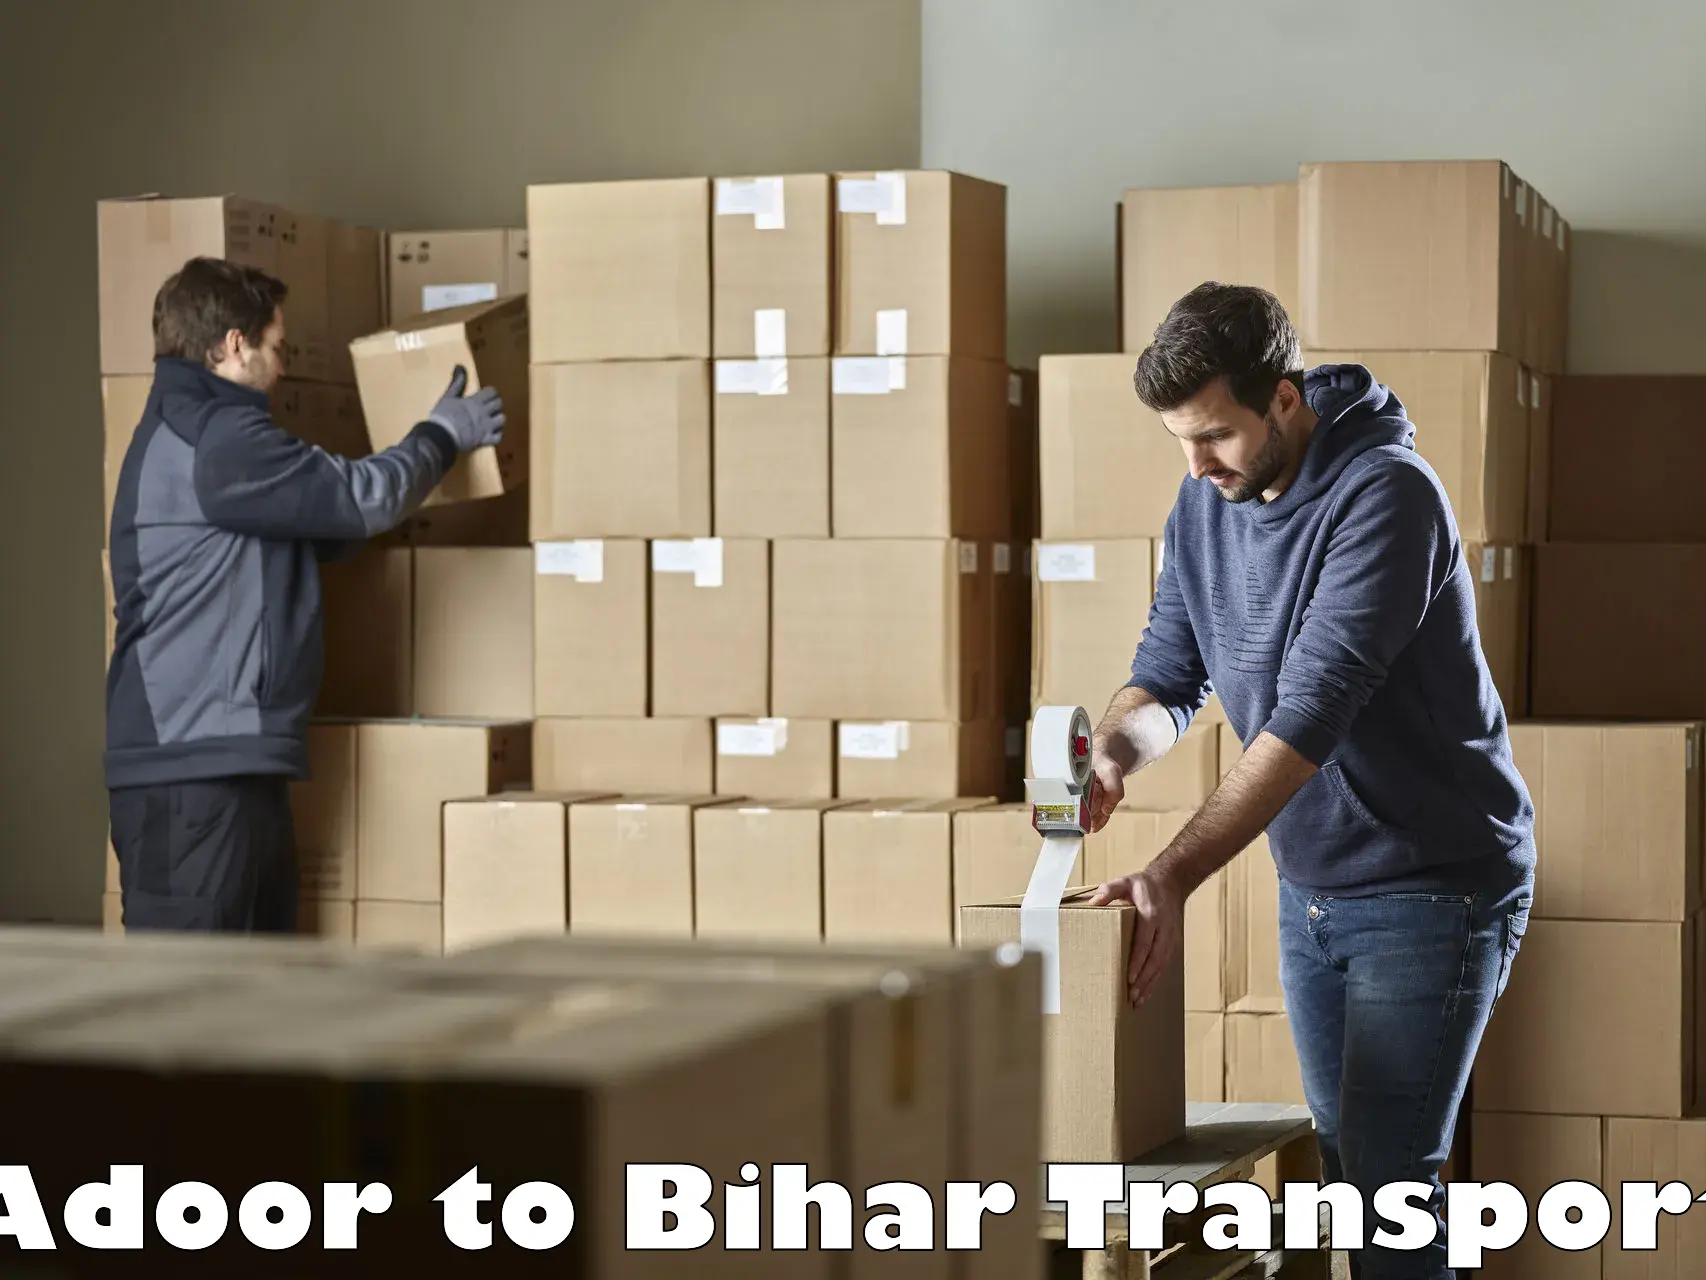 Lorry transport service Adoor to Bihar